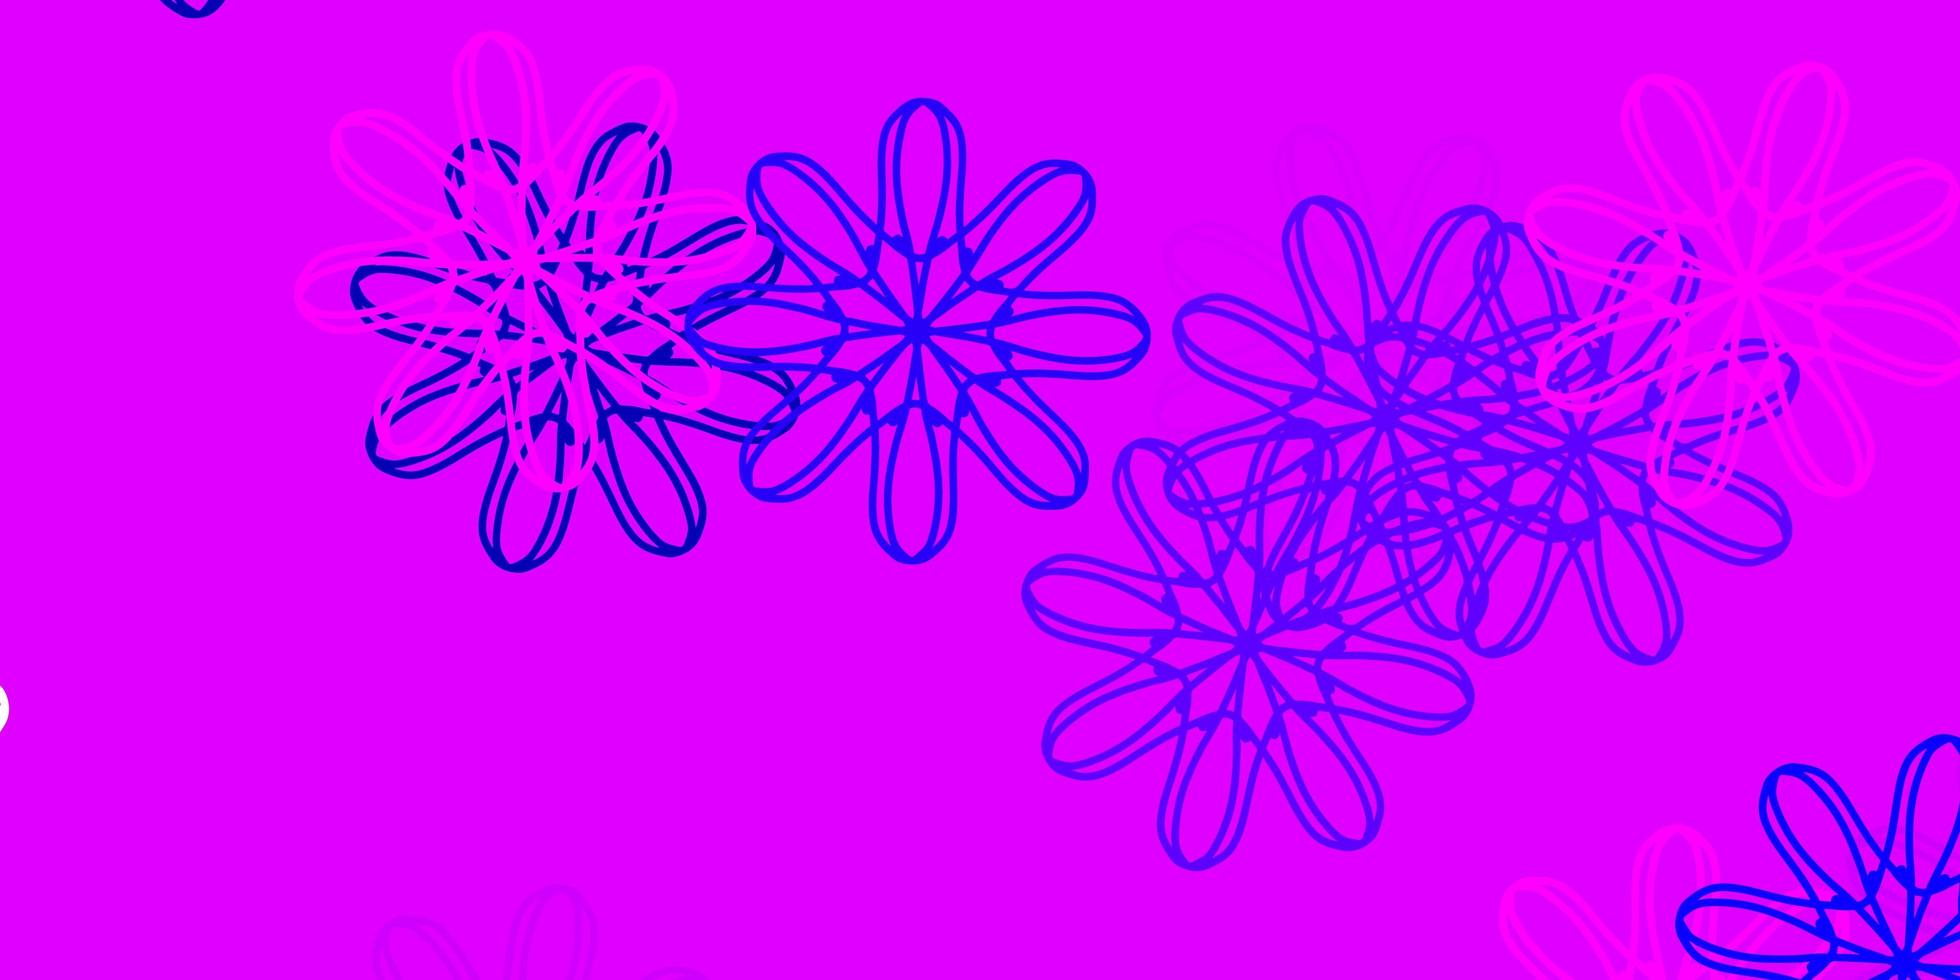 modello doodle vettoriale viola chiaro, rosa con fiori.